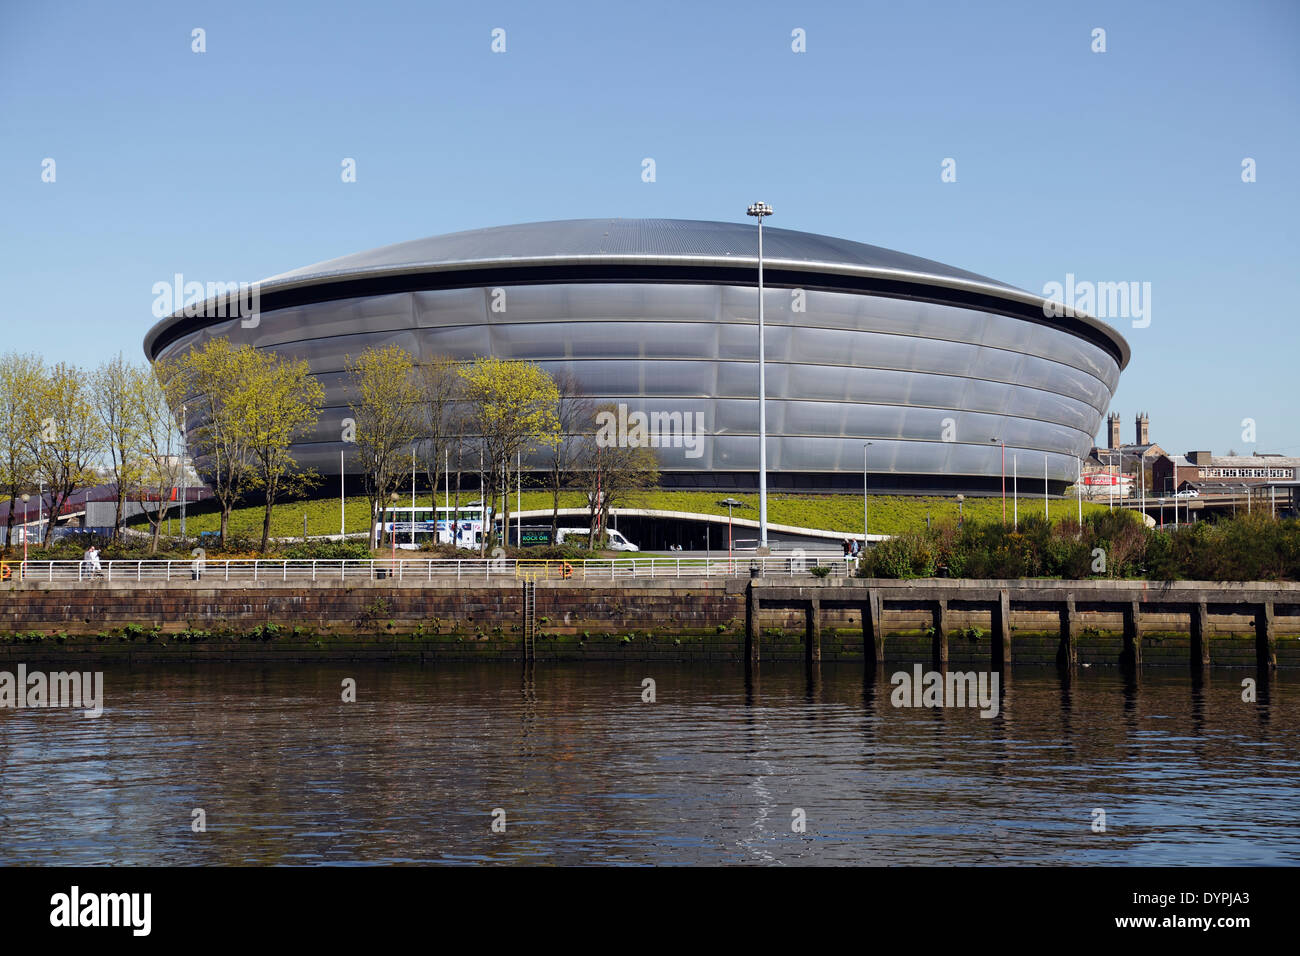 Le SSE Hydro Arena sur le SEC Center de Glasgow, en Écosse, au Royaume-Uni Banque D'Images